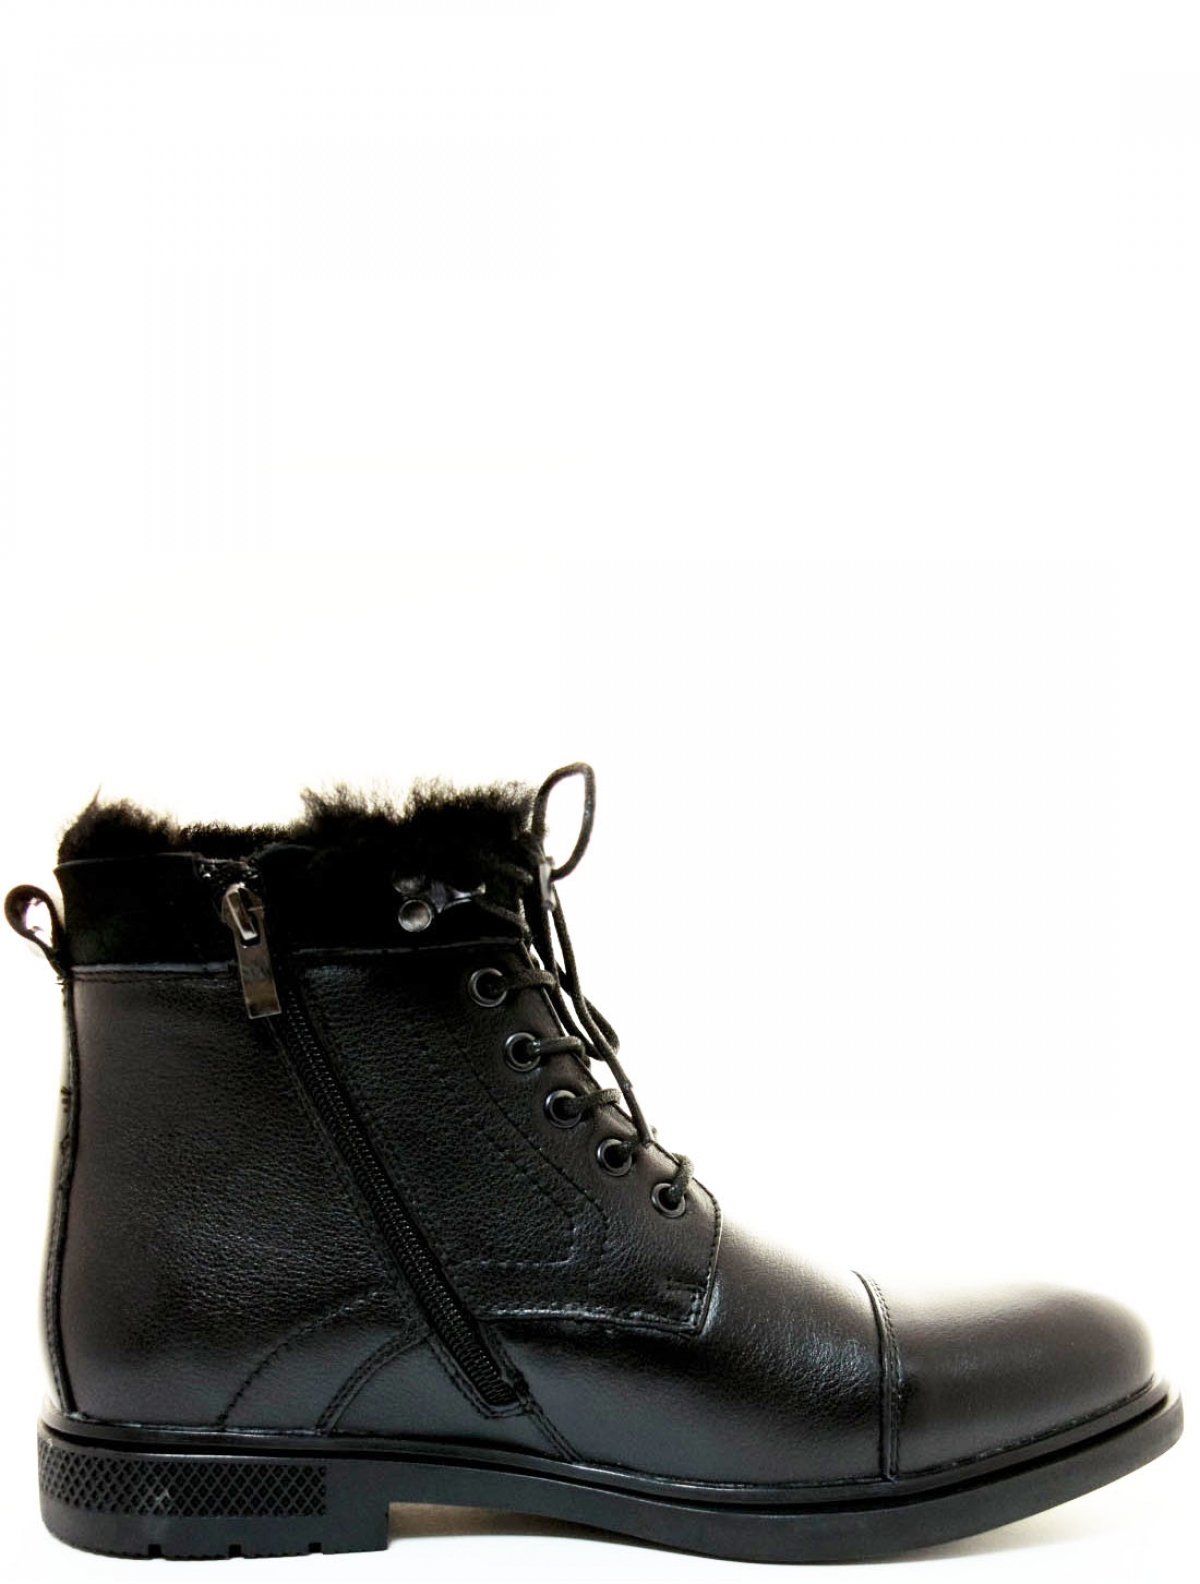 Respect VS22-122175 мужские ботинки